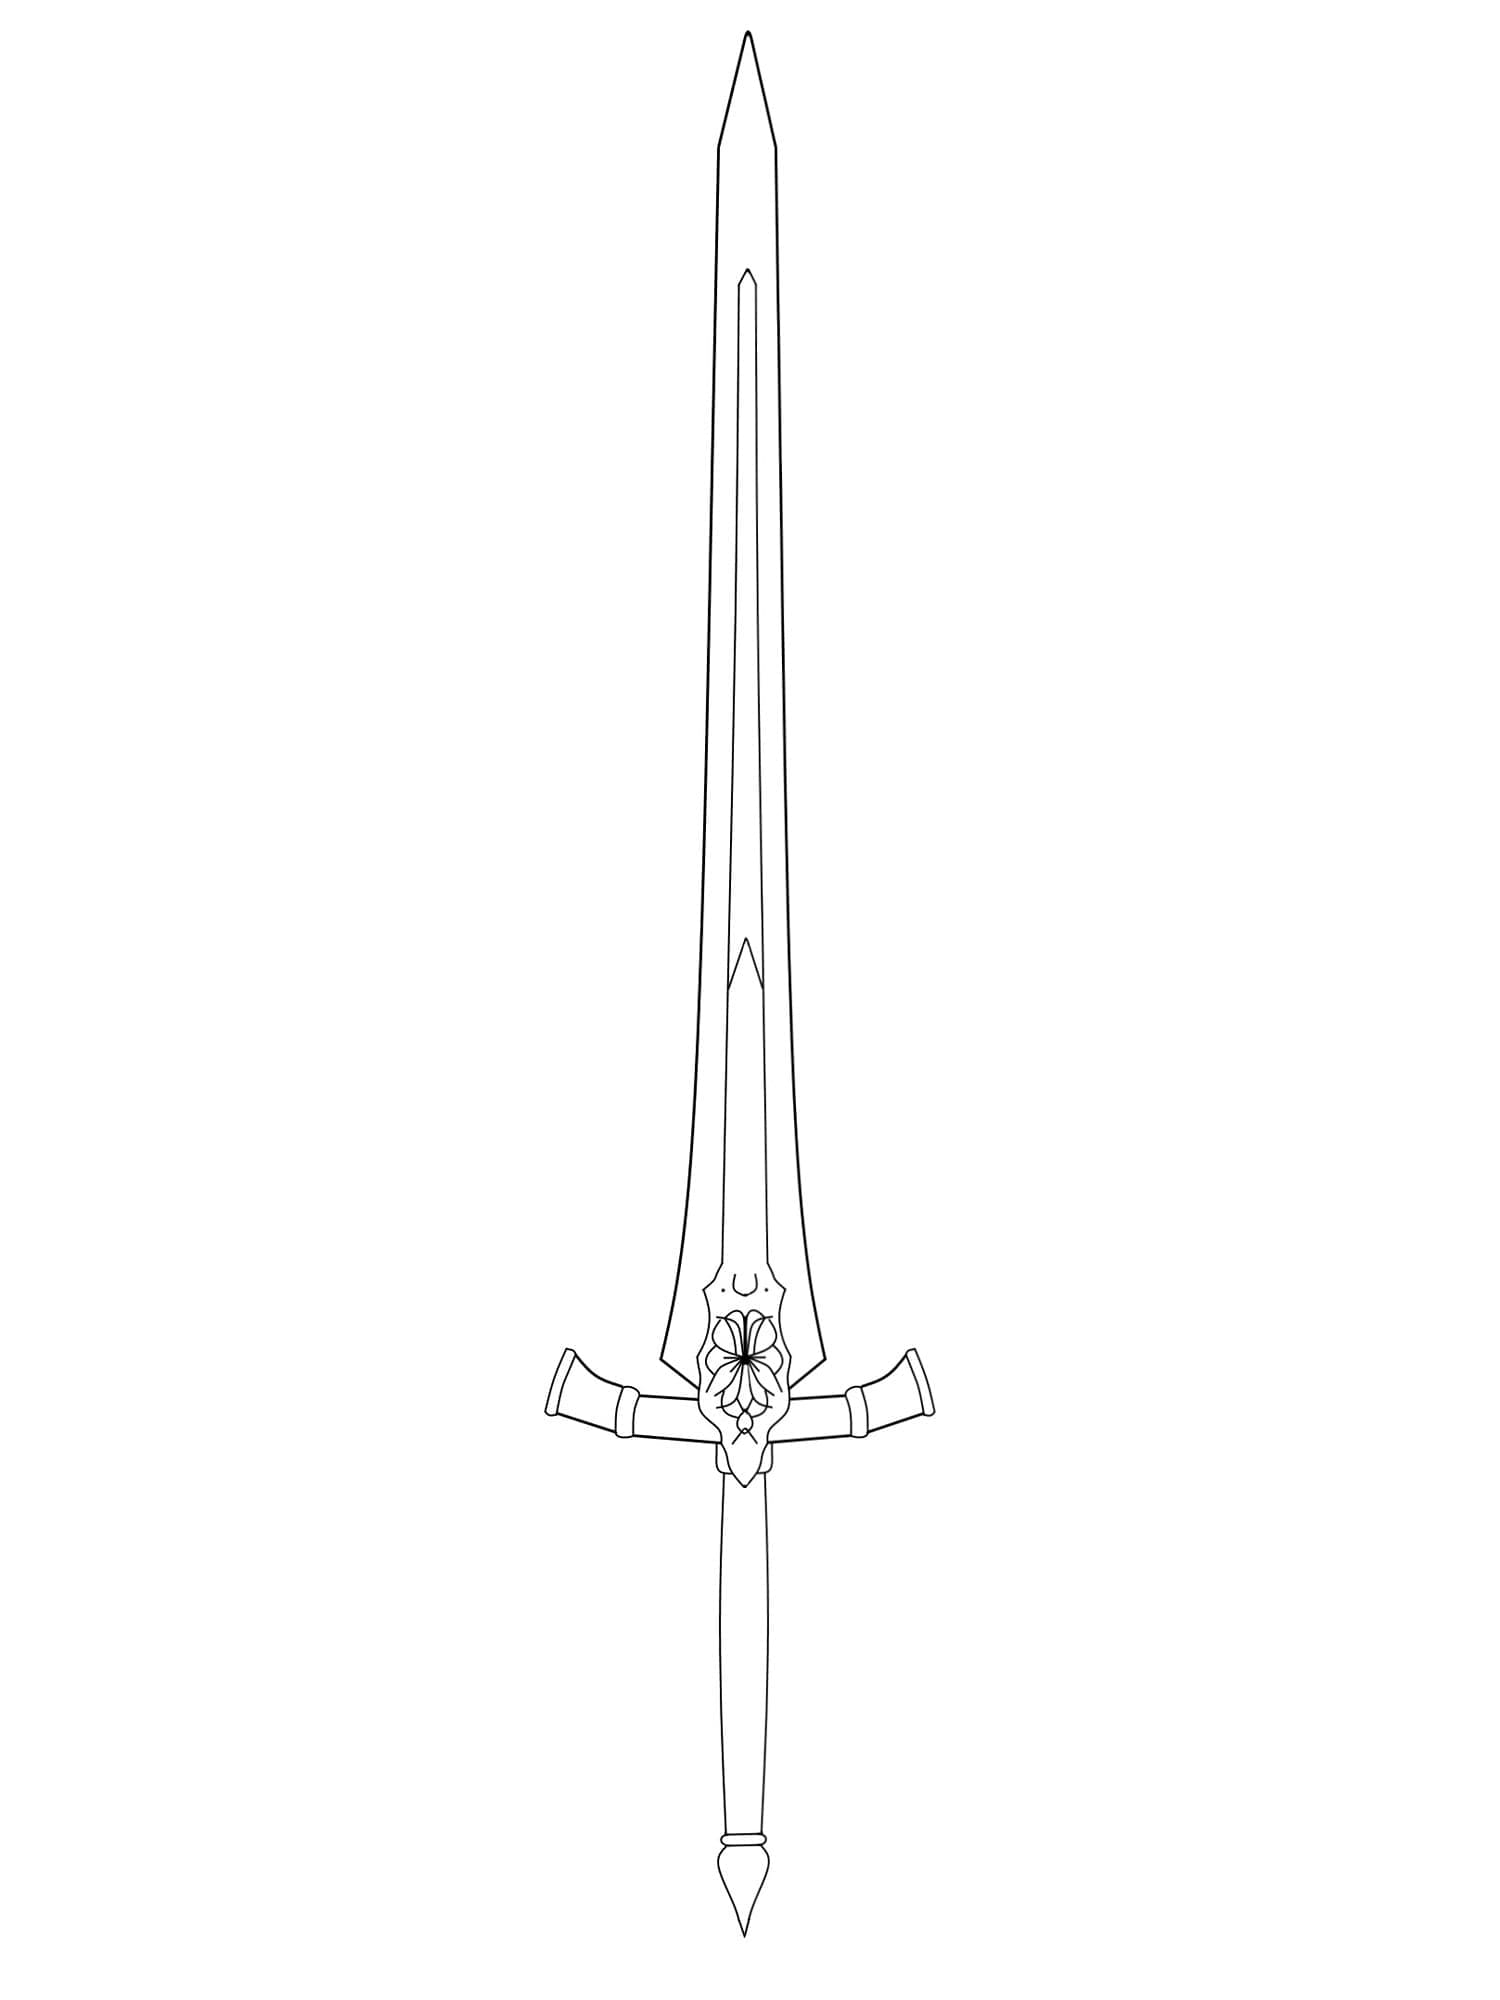 Épée Longue coloring page